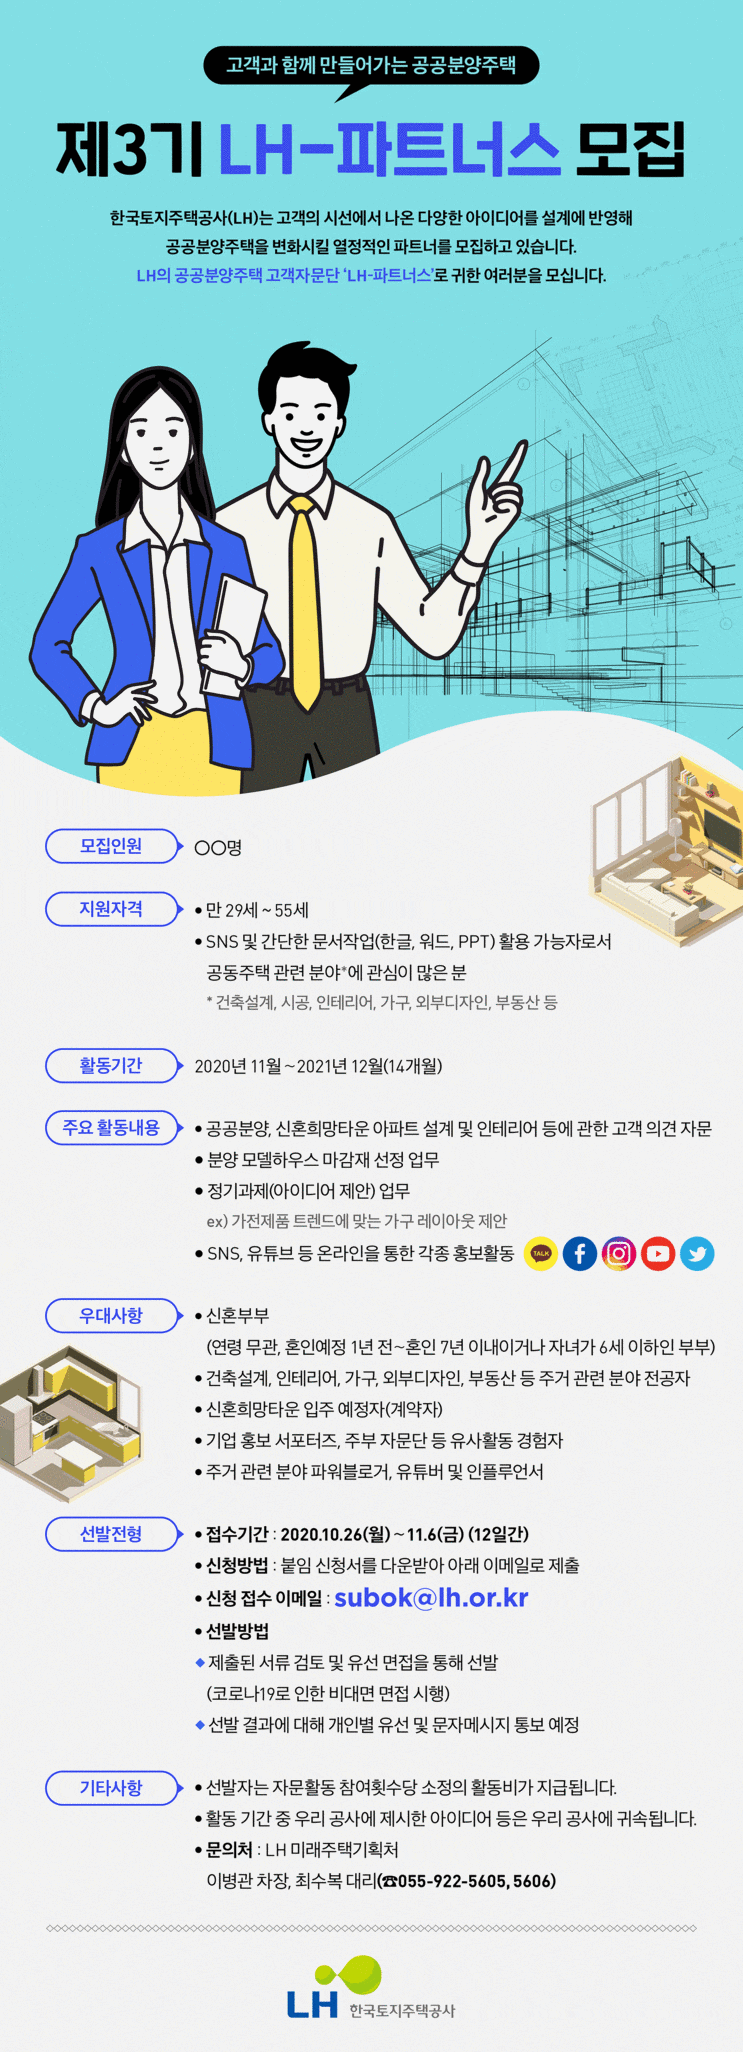 LH한국토지주택공사 LH-파트너스 3기 모집